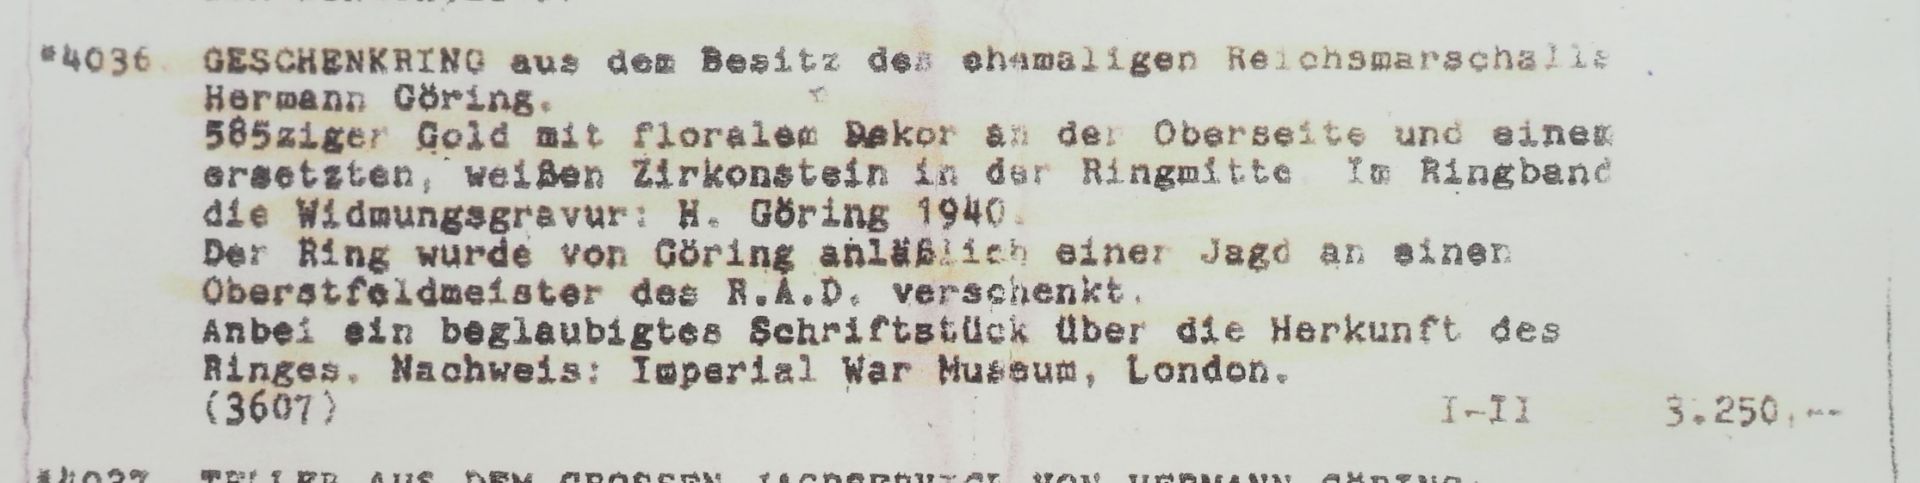 Geschenkring des Reichsmarschall Hermann Göring. - Bild 4 aus 5